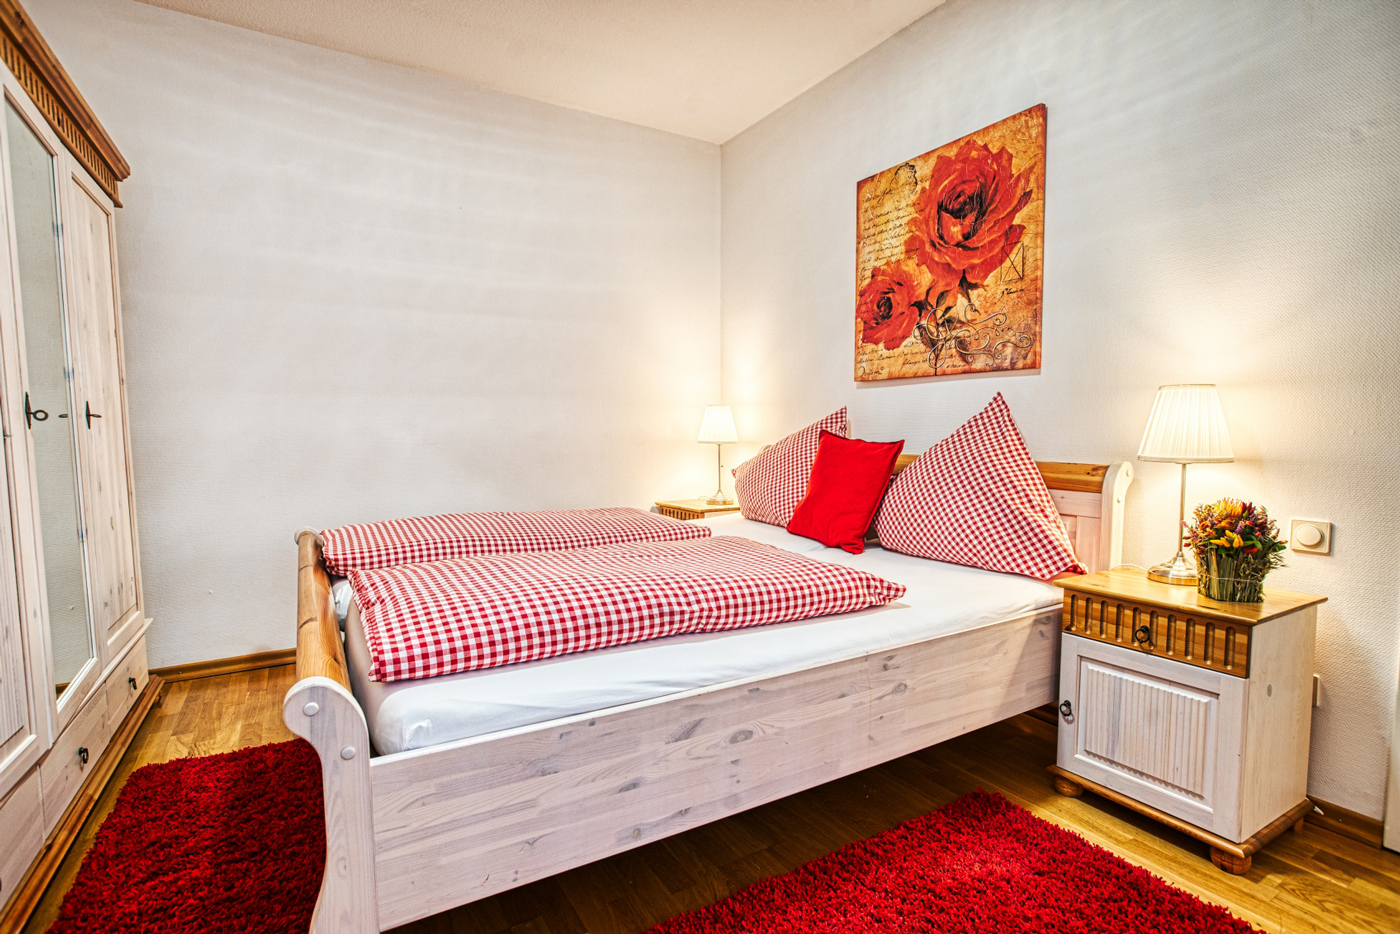 Gemütliches Hotelzimmer für zwei Personen in Baden-Baden buchen.